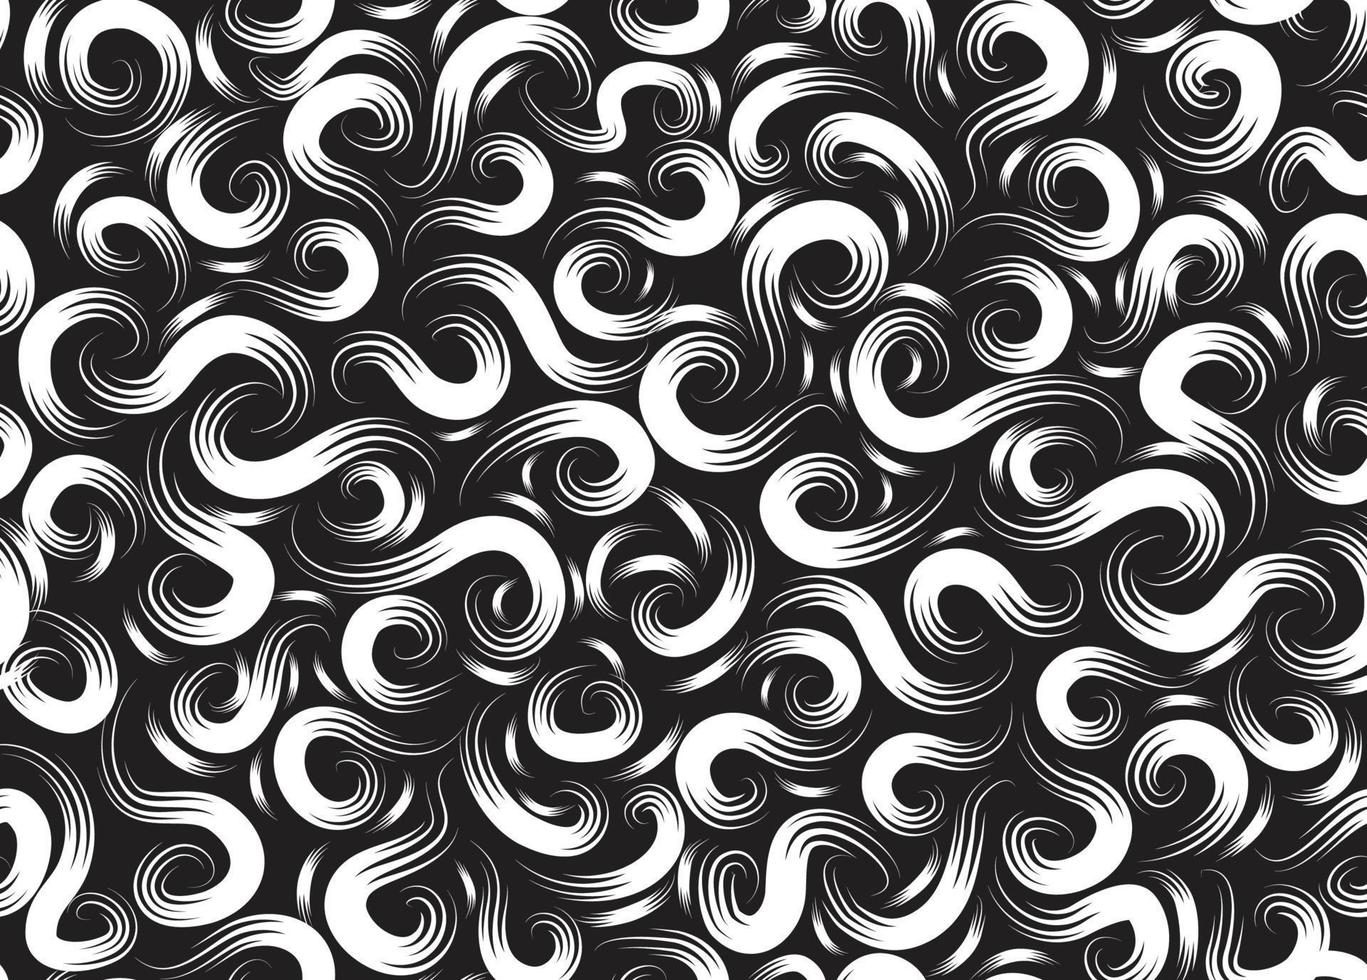 abstracte swirl lijnen en punten naadloze patroon. artistieke lijn decoratieve stijlvolle achtergrond. abstracte betegelde monochrome textuur met organische vormen vector